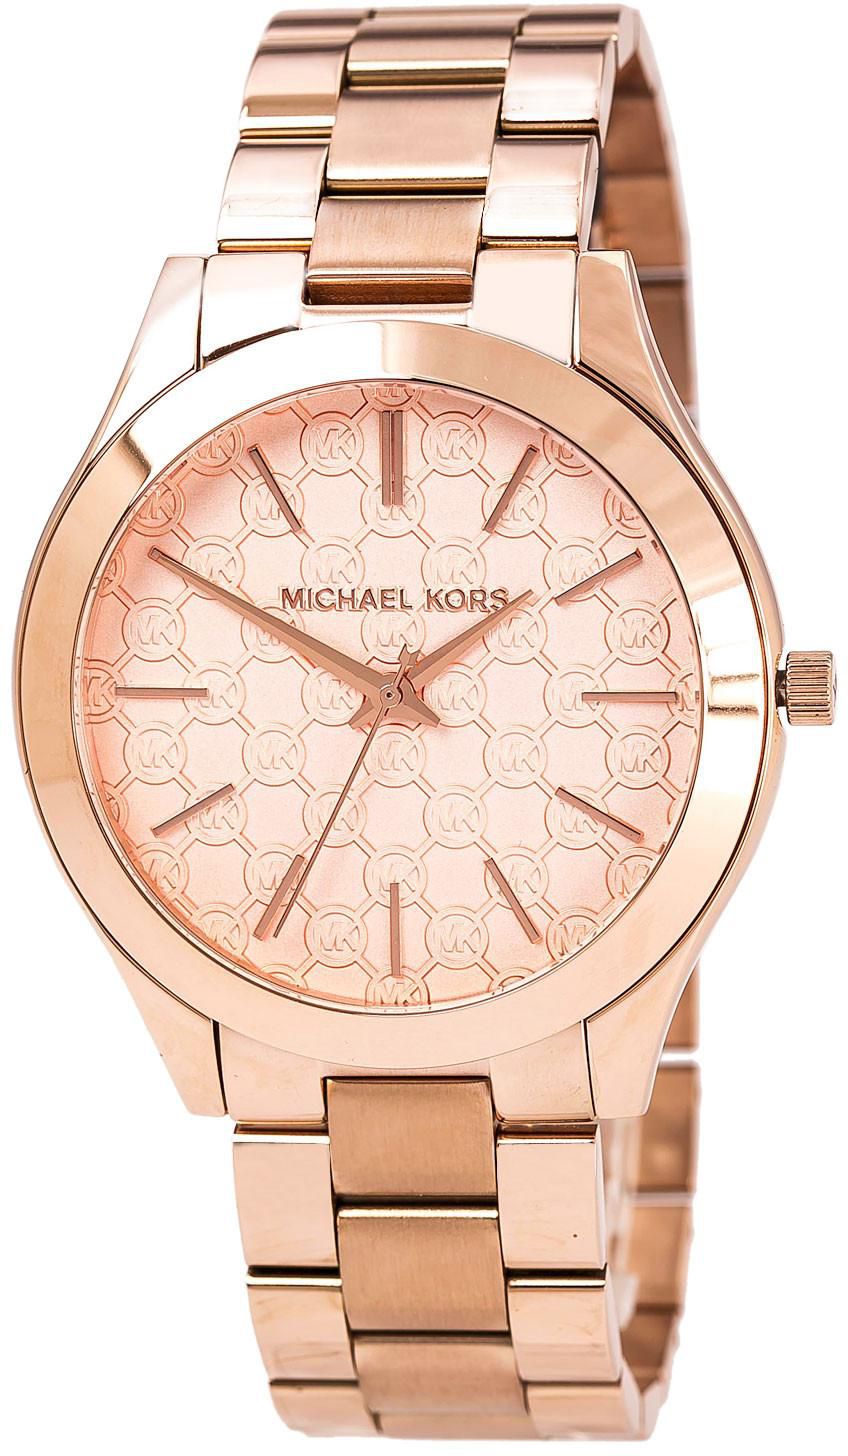 Michael Kors Women's Runway Rose Gold Stainless Steel Quartz Watch